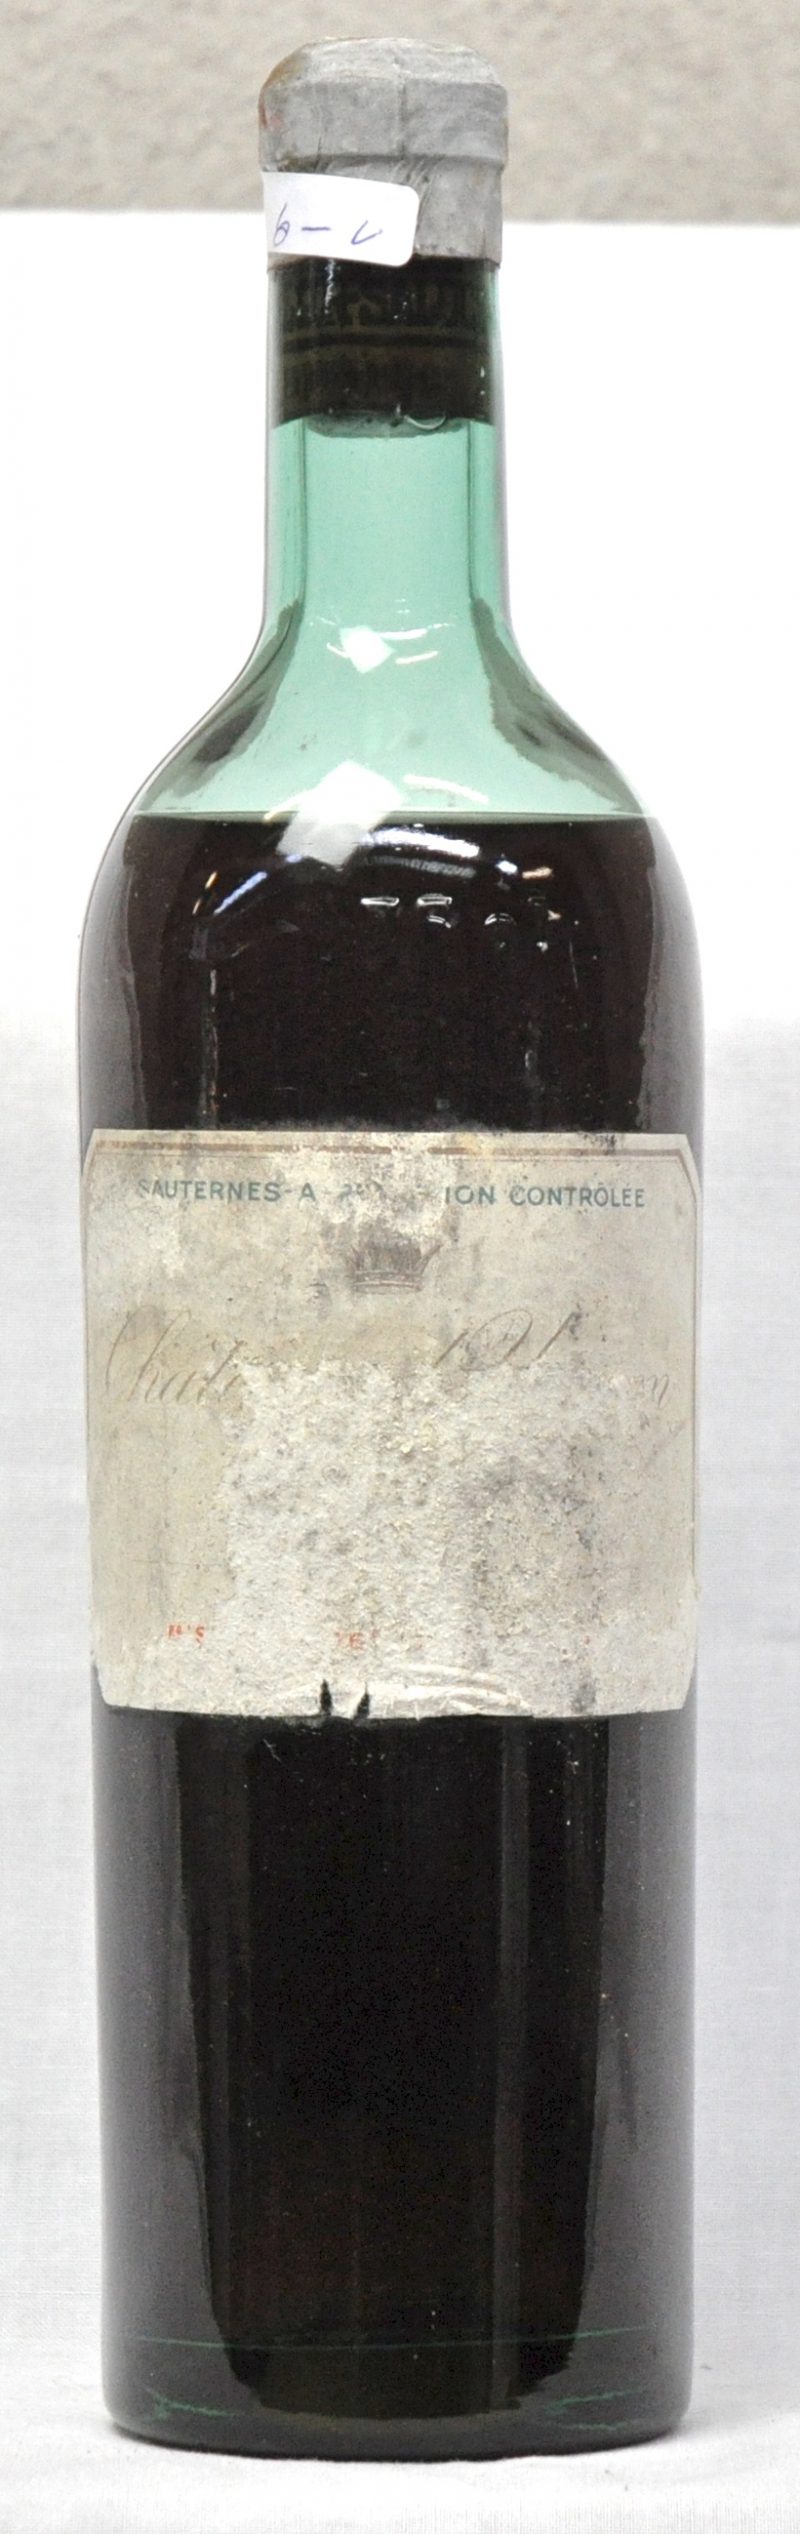 Ch. d’Yquem A.C. Sauternes 1e grand cru classé  M.C.  1944  aantal: 1 bt M.S., vaag etiket